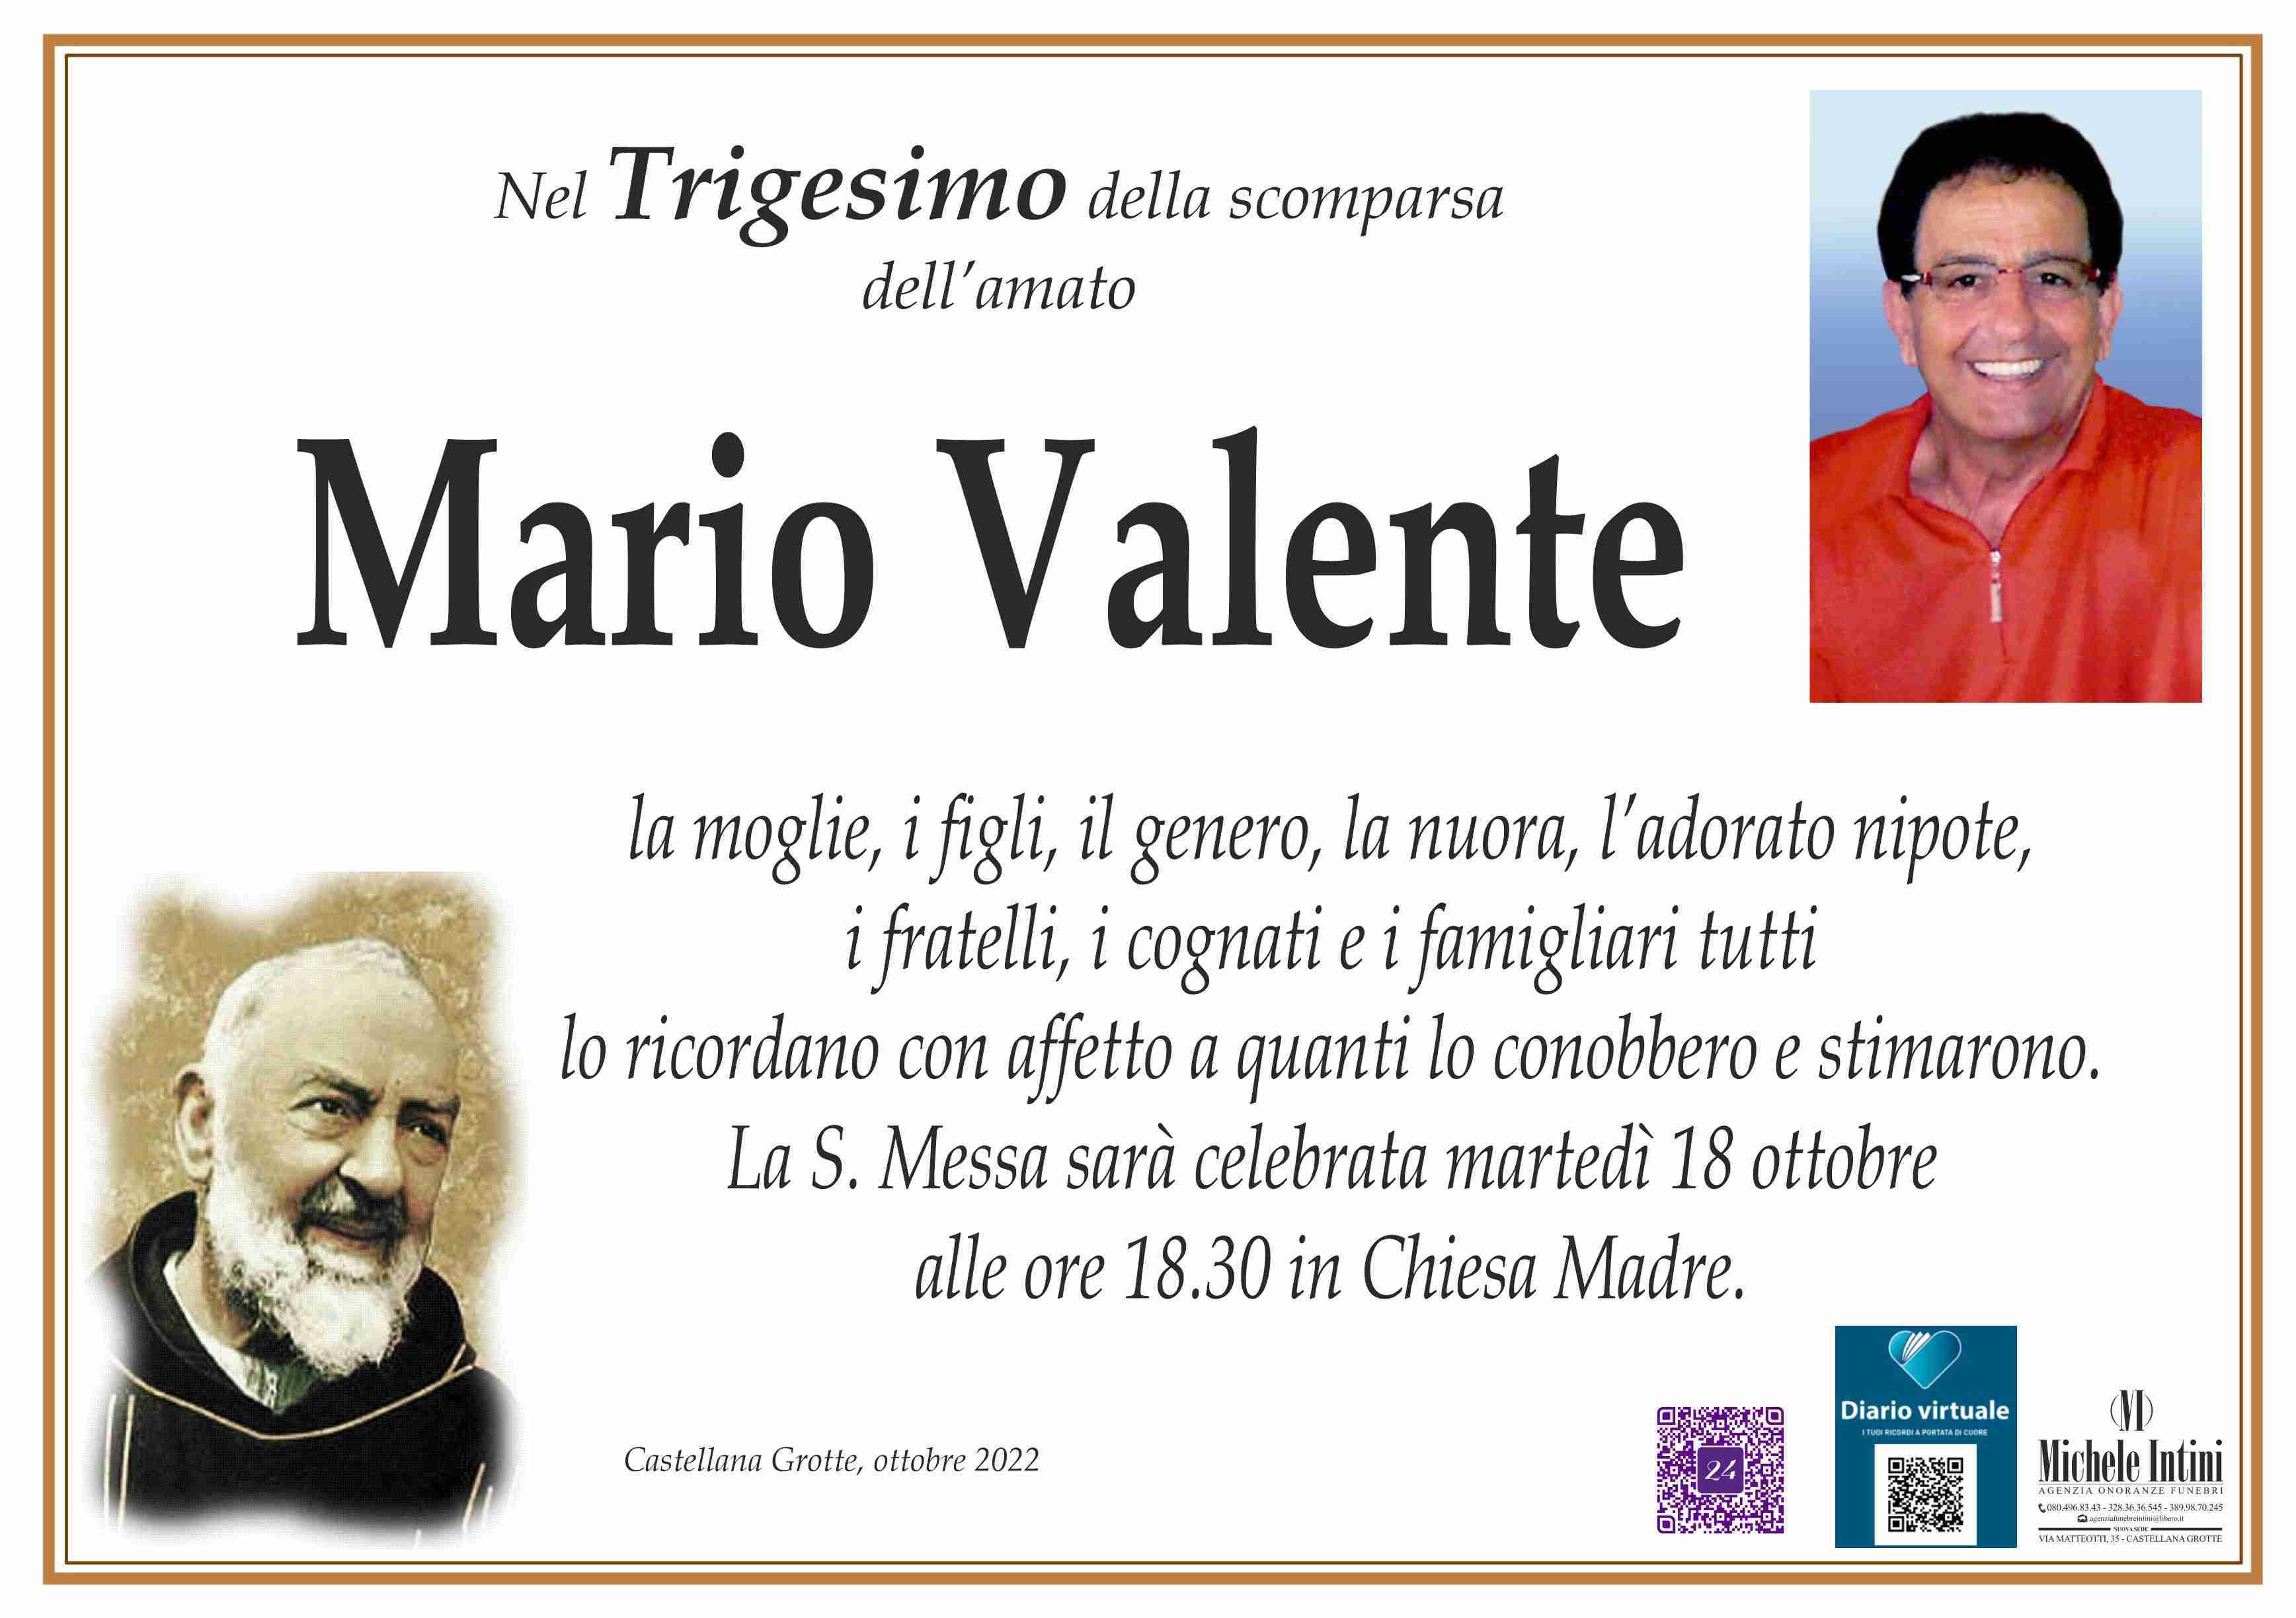 Mario Valente